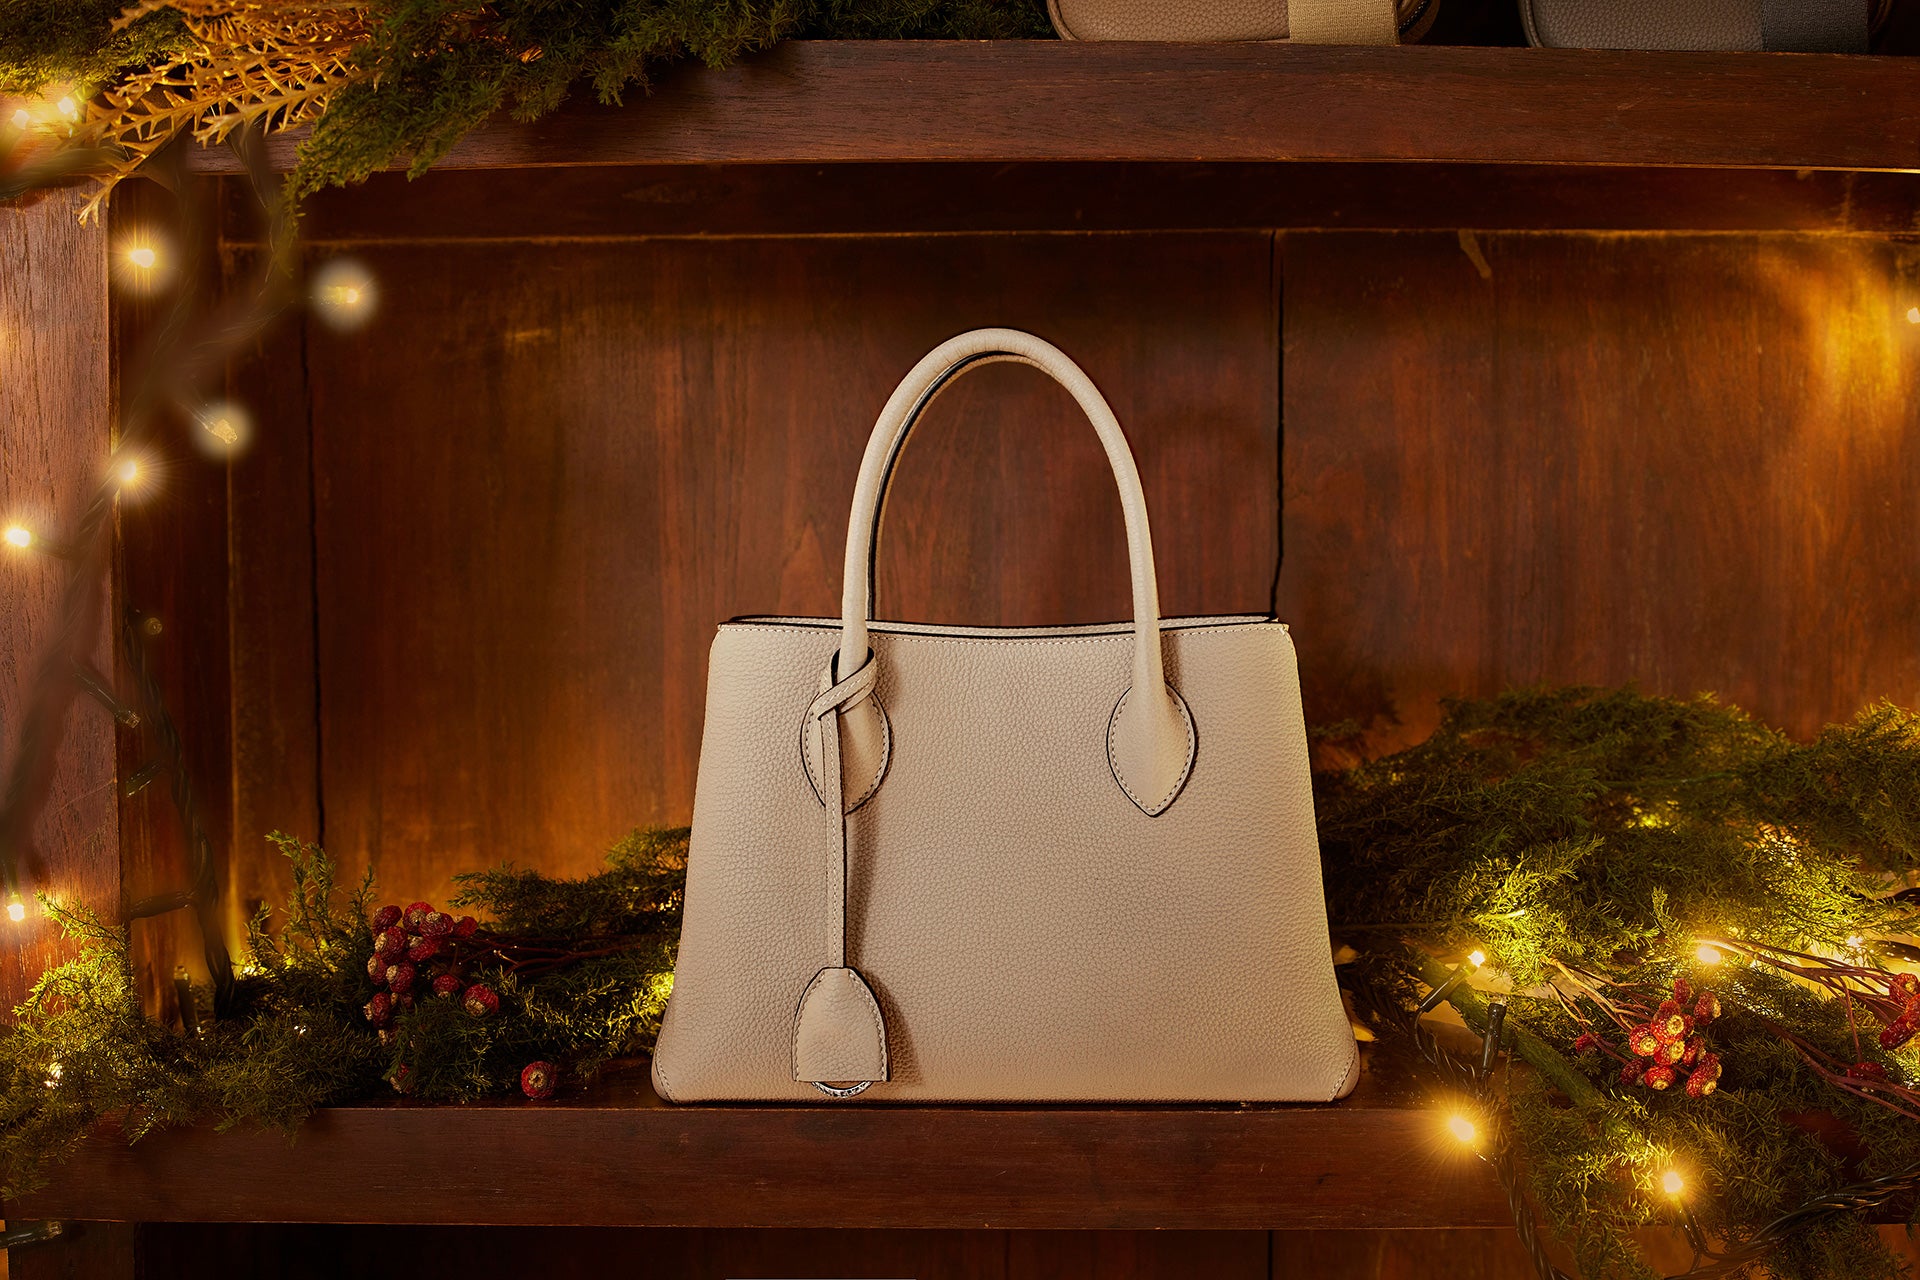 Elegante BONAVENTURA Handtasche auf festlich geschmücktem Weihnachtstisch.